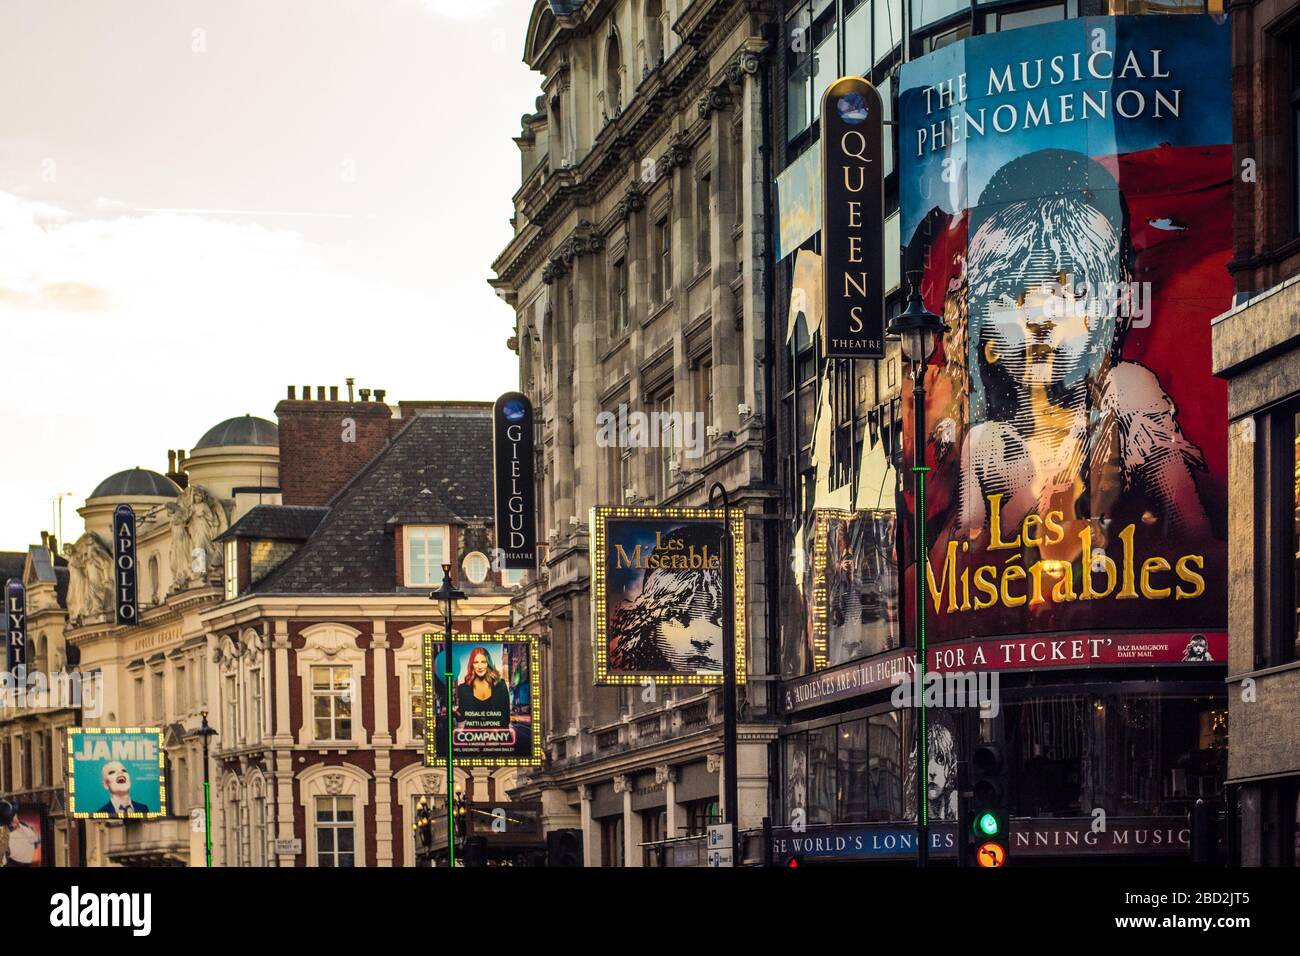 LONDRES- le théâtre les Misérables, un célèbre spectacle de longue durée dans le West End de Londres Banque D'Images